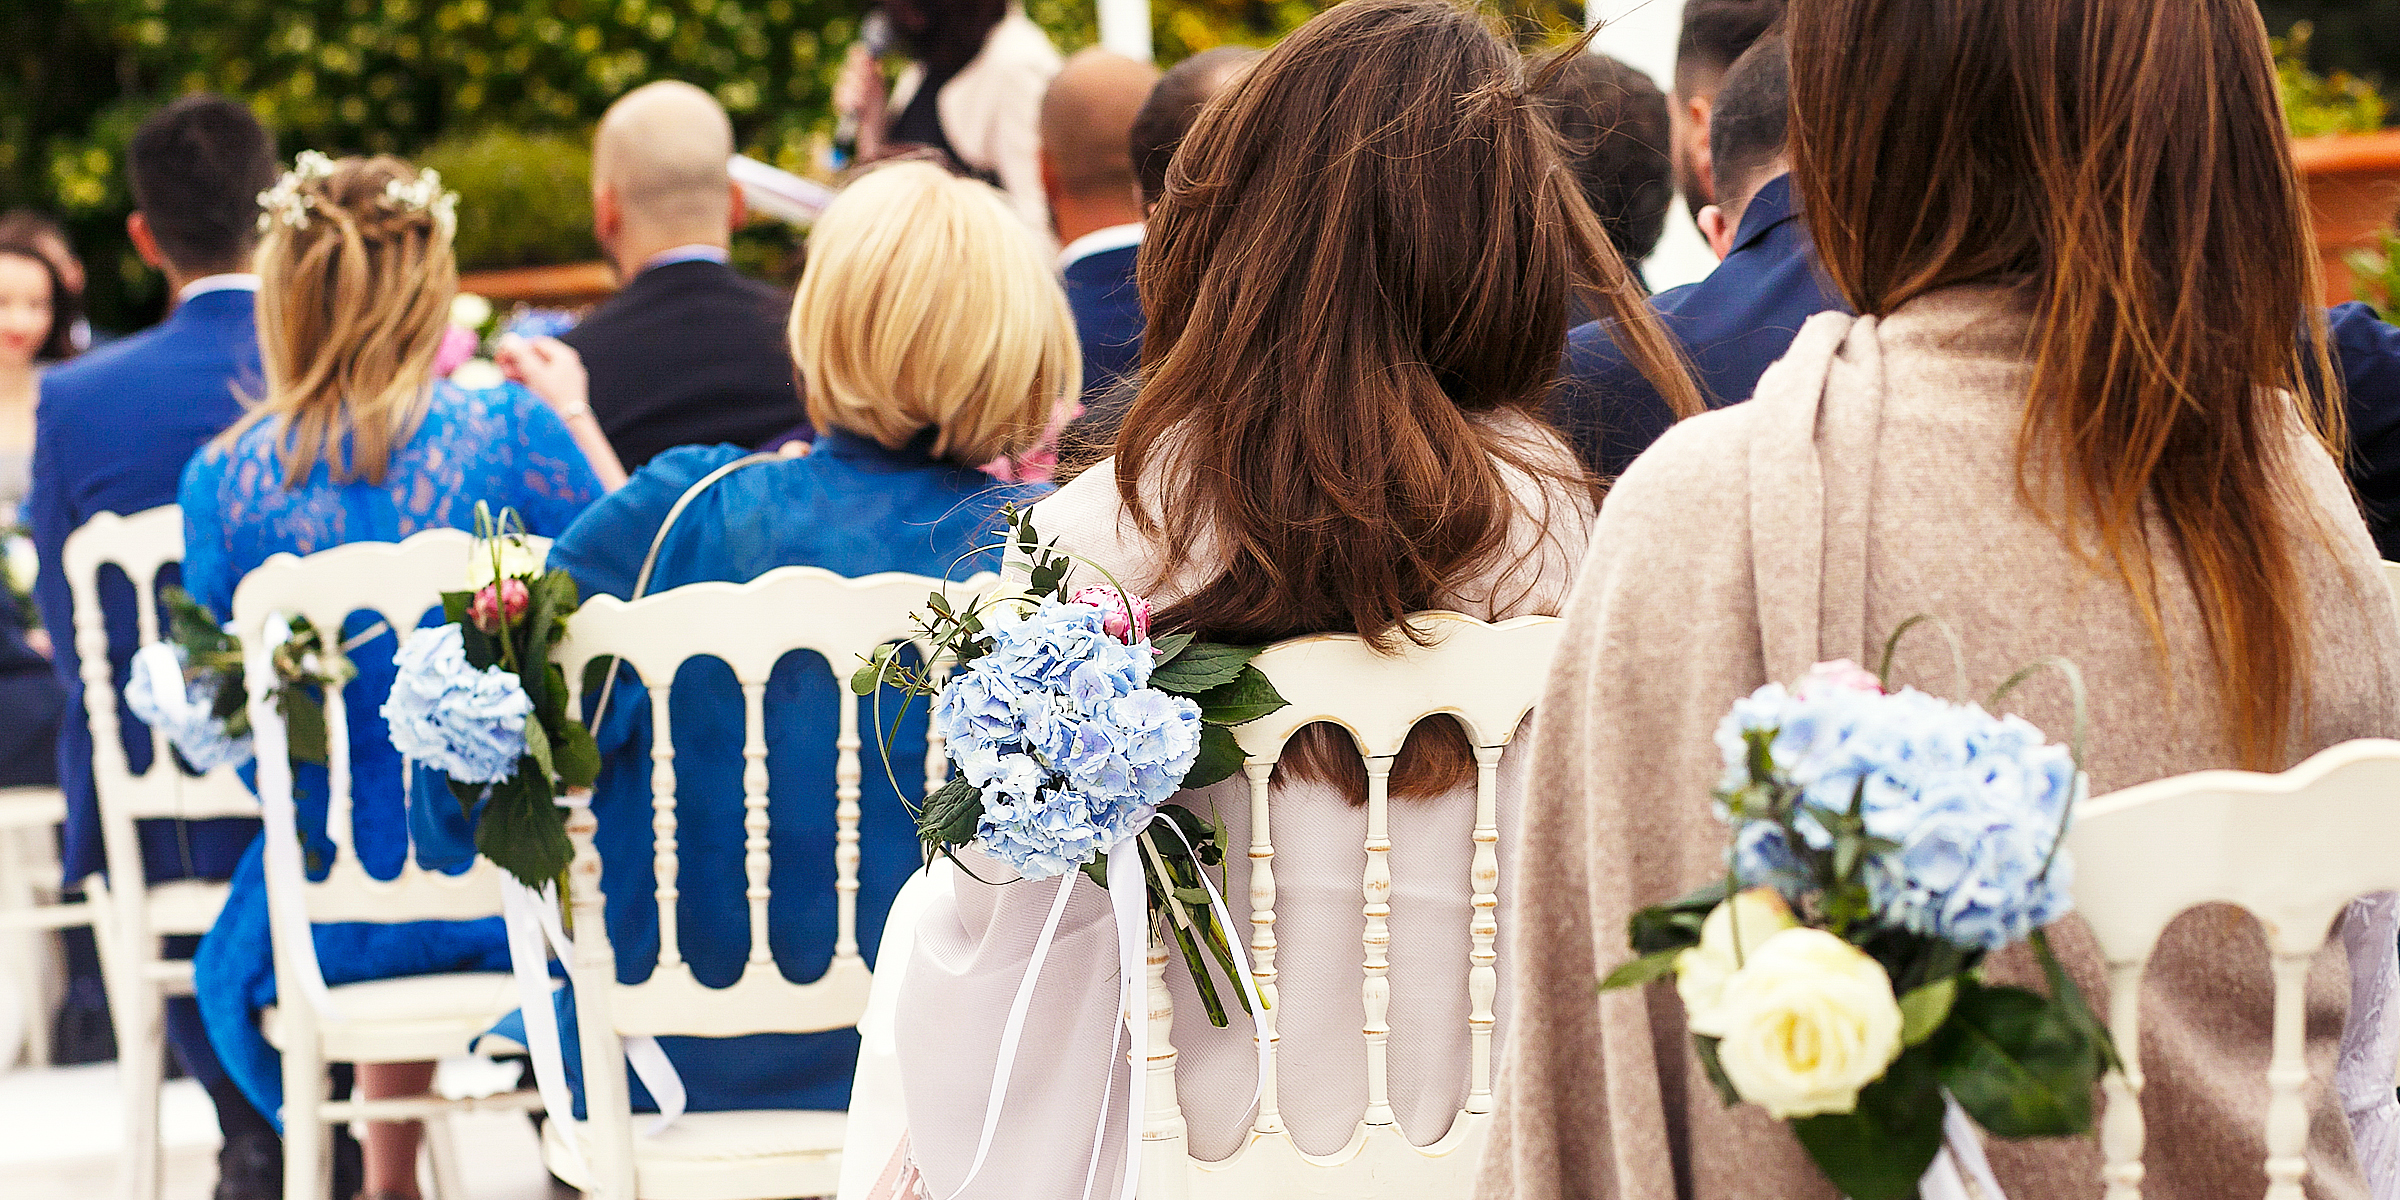 Menschen bei einer Hochzeit | Quelle: Shutterstock